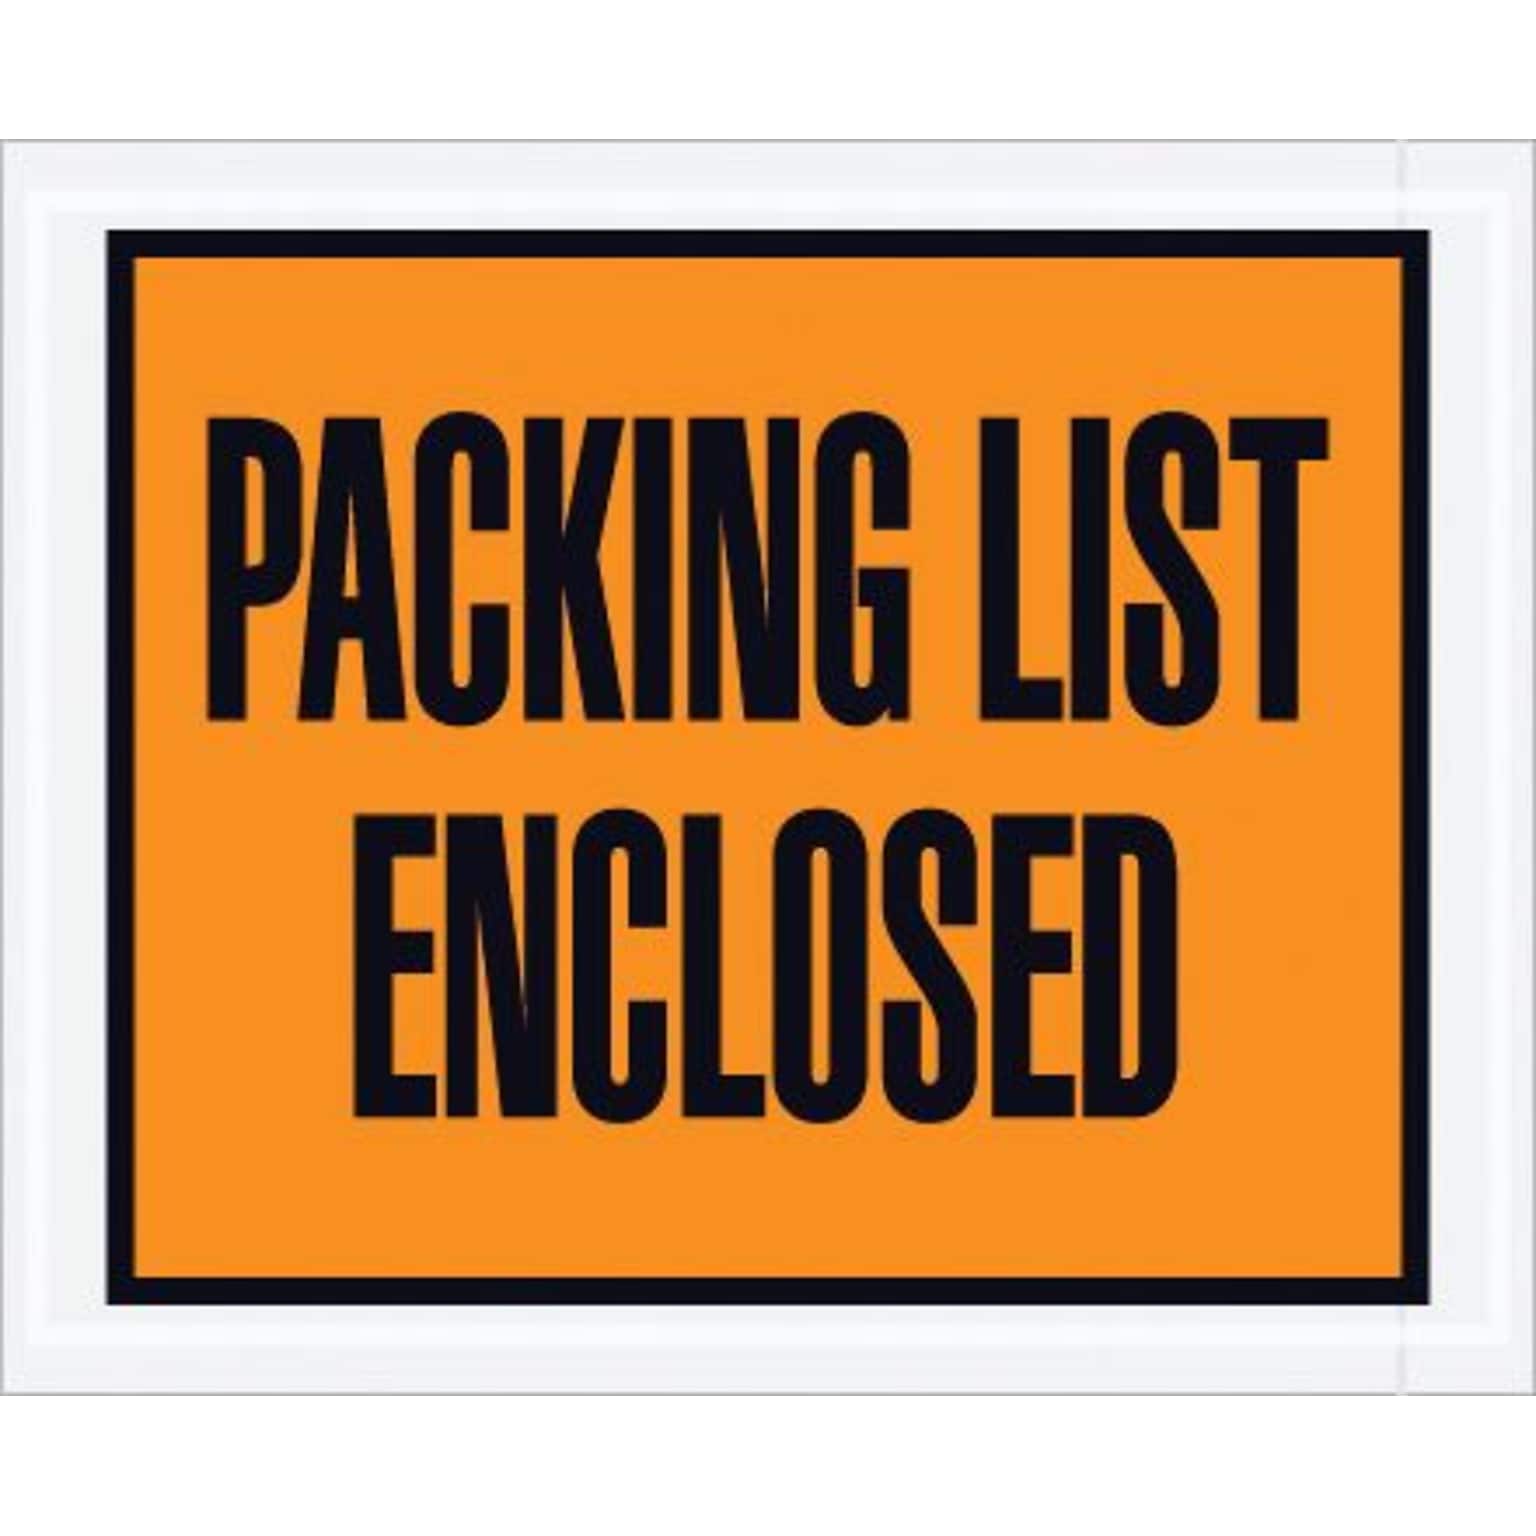 Staples Packing List Envelope, 4 1/2 x 5 1/2 - Orange Full Face, Packing List Enclosed, 1000/Case